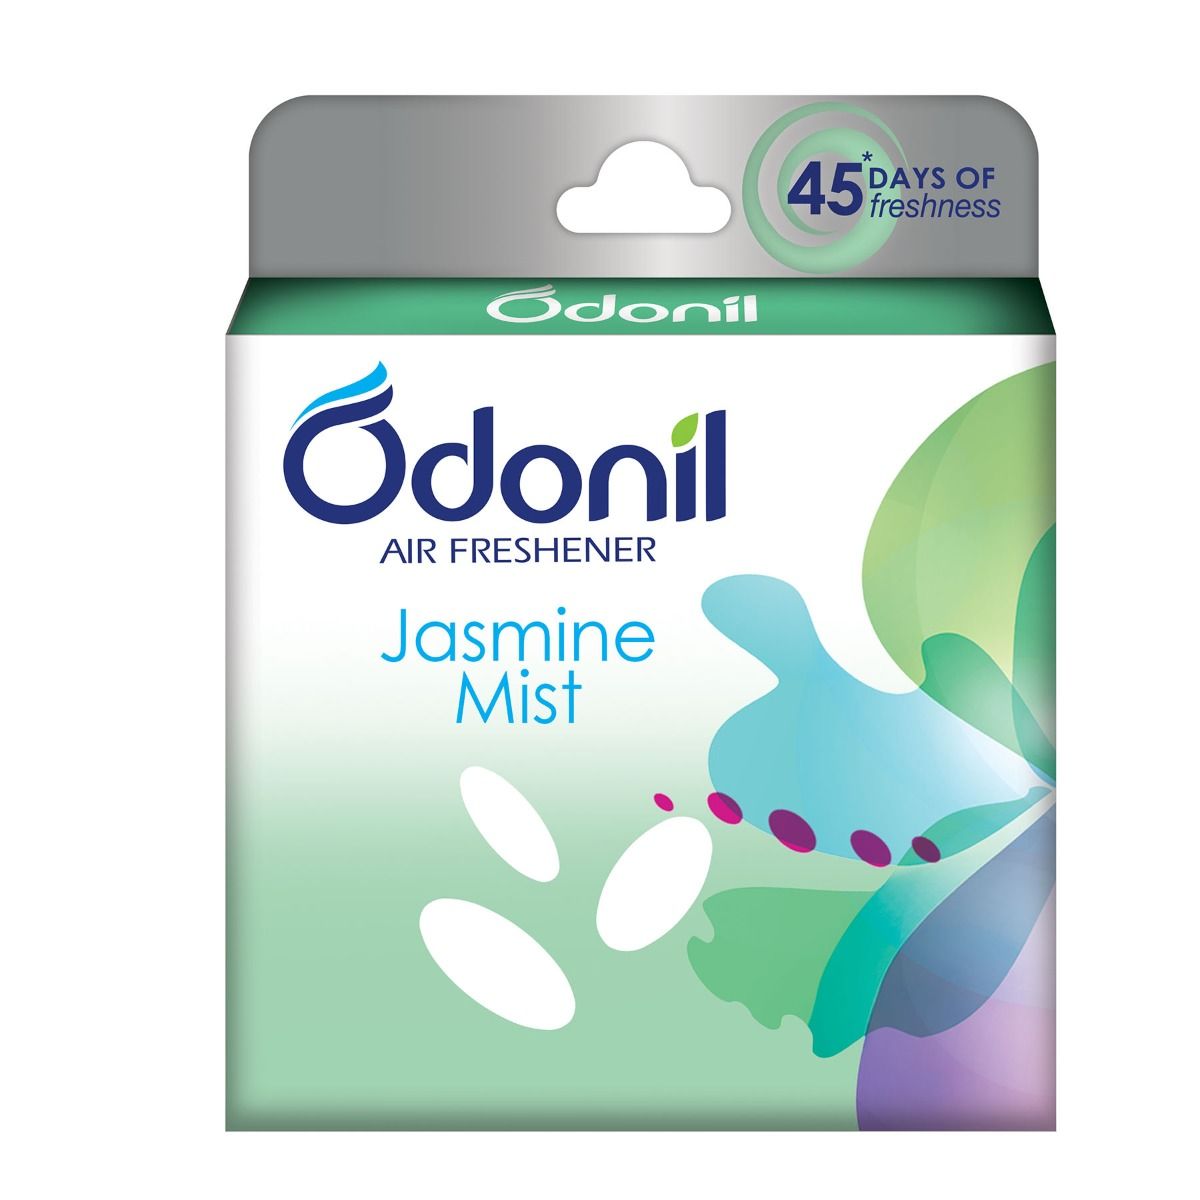 Odonil Jasmine Mist Air Freshener, 75 gm, Pack of 1 